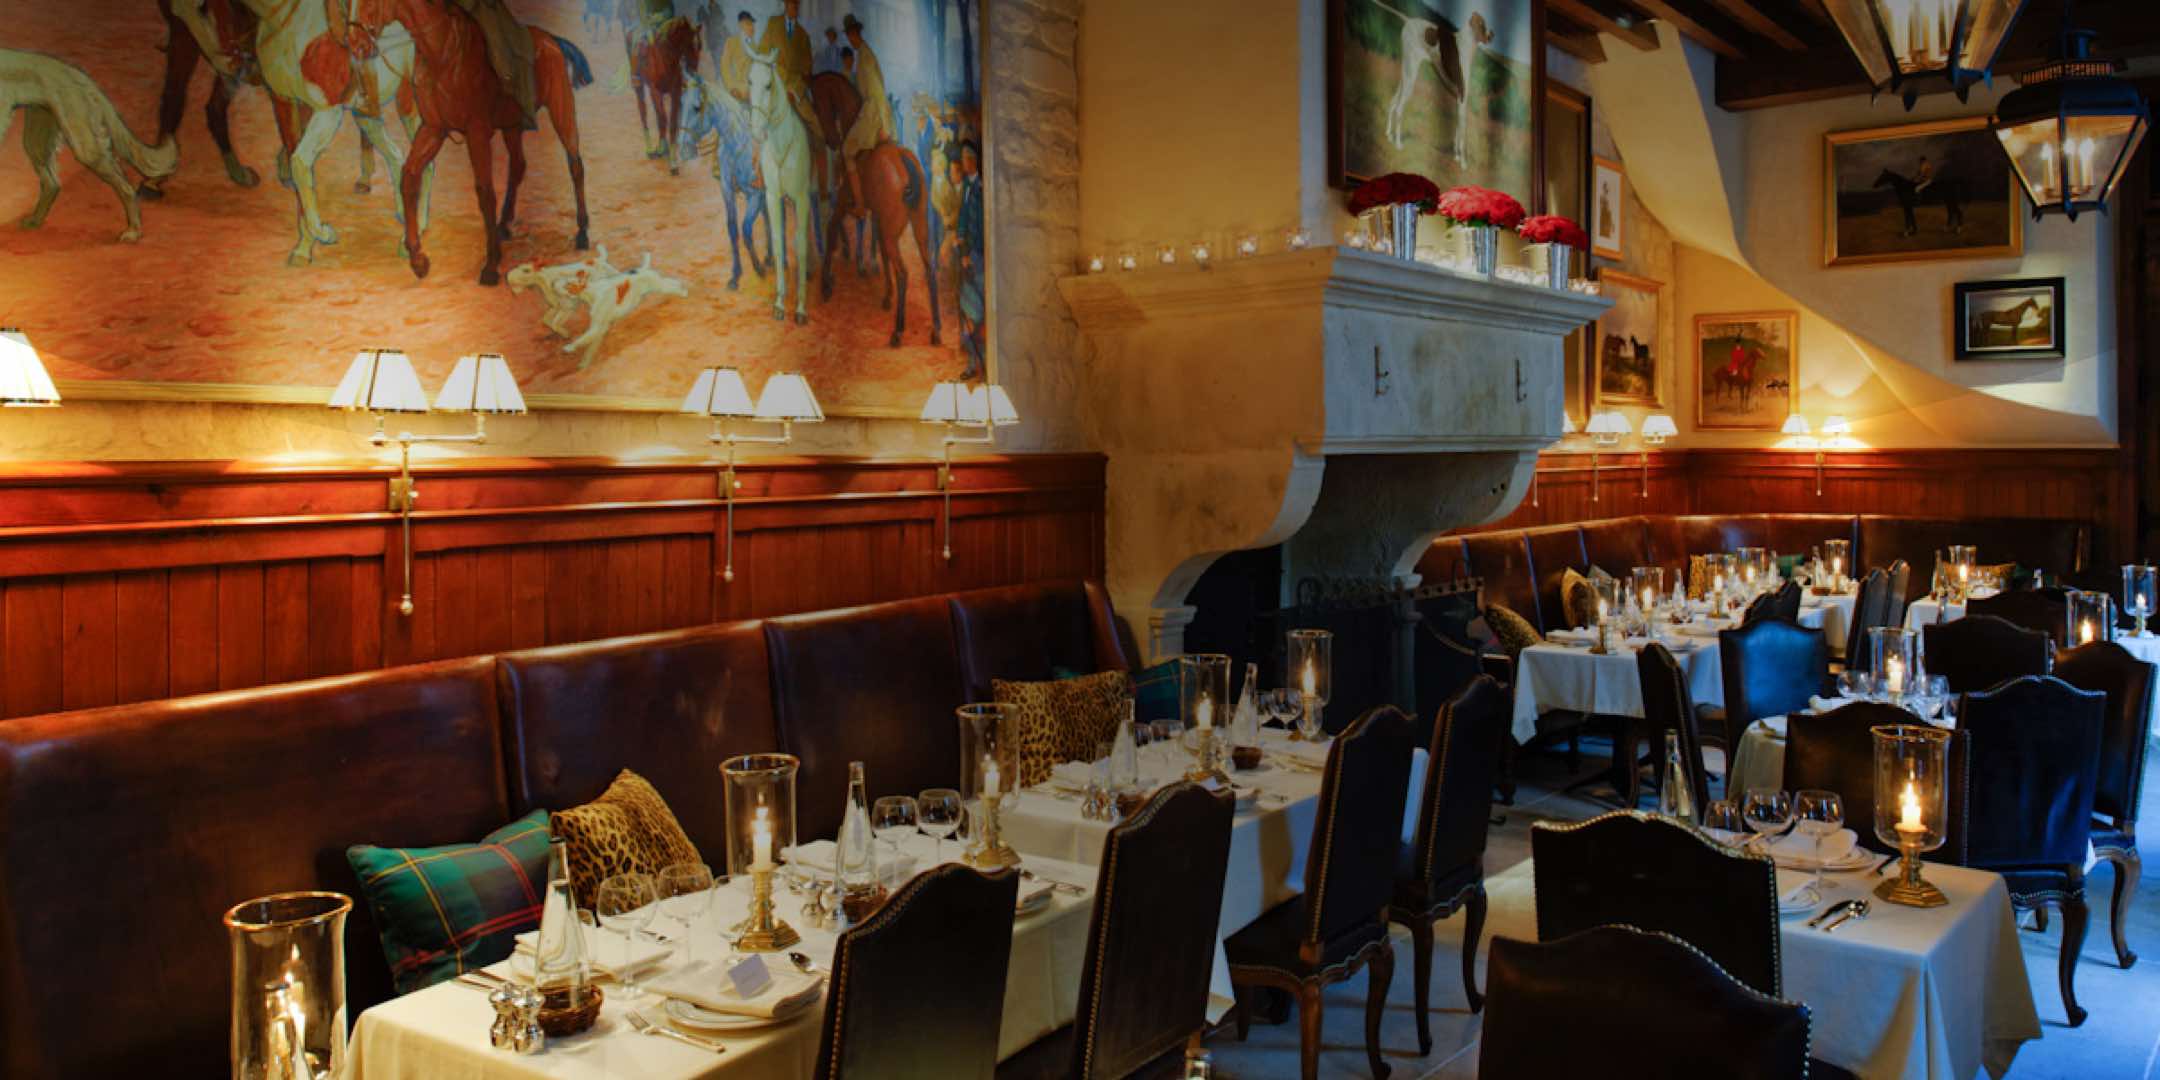 Photograph of interior of Ralph’s restaurant in Paris.